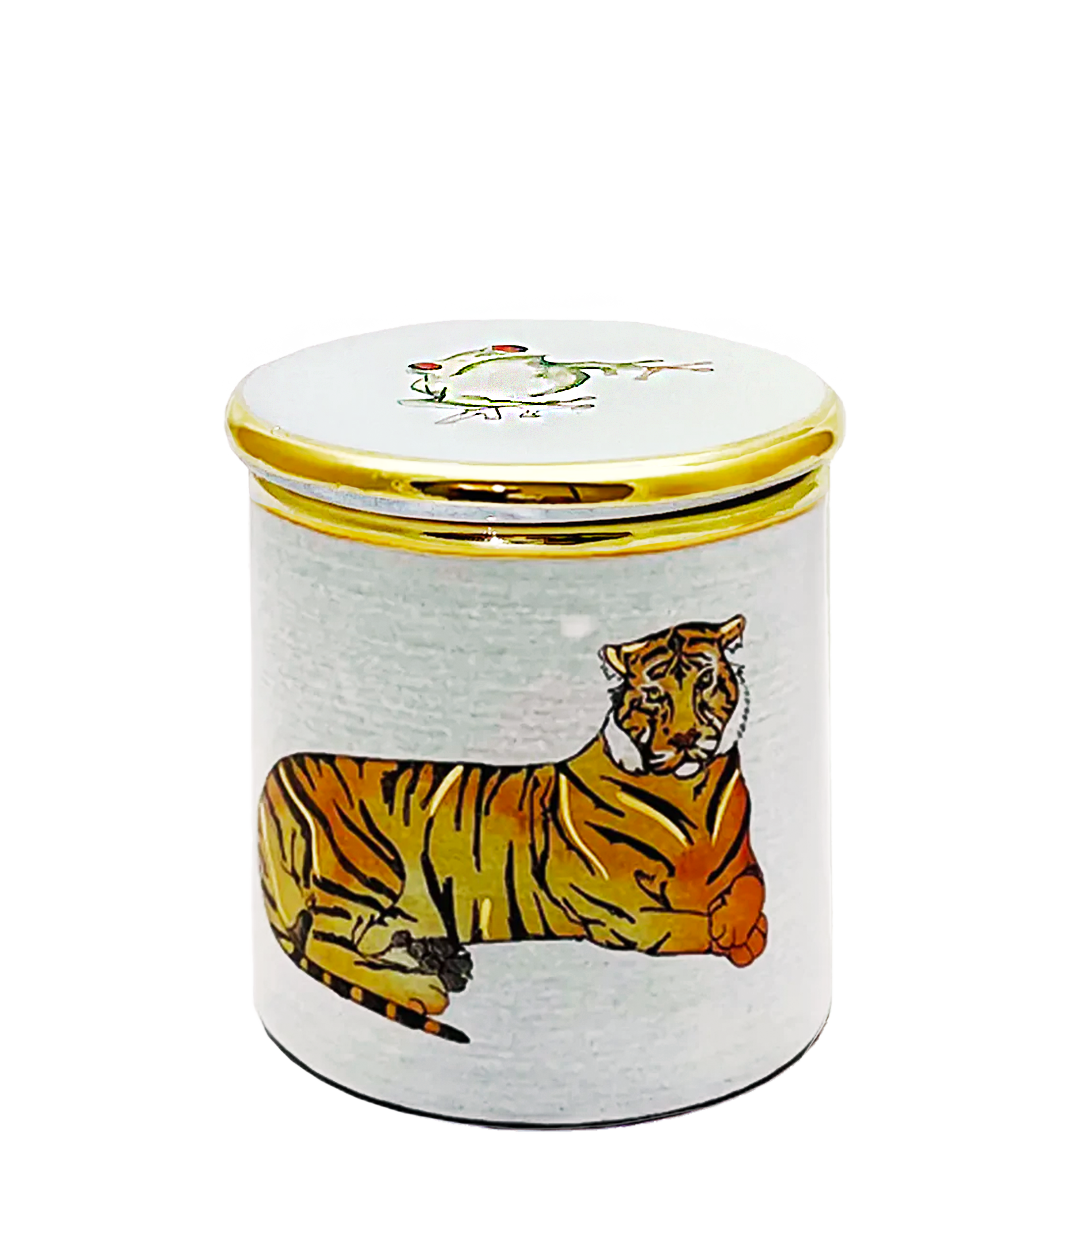 Tiger Ceramic Candle